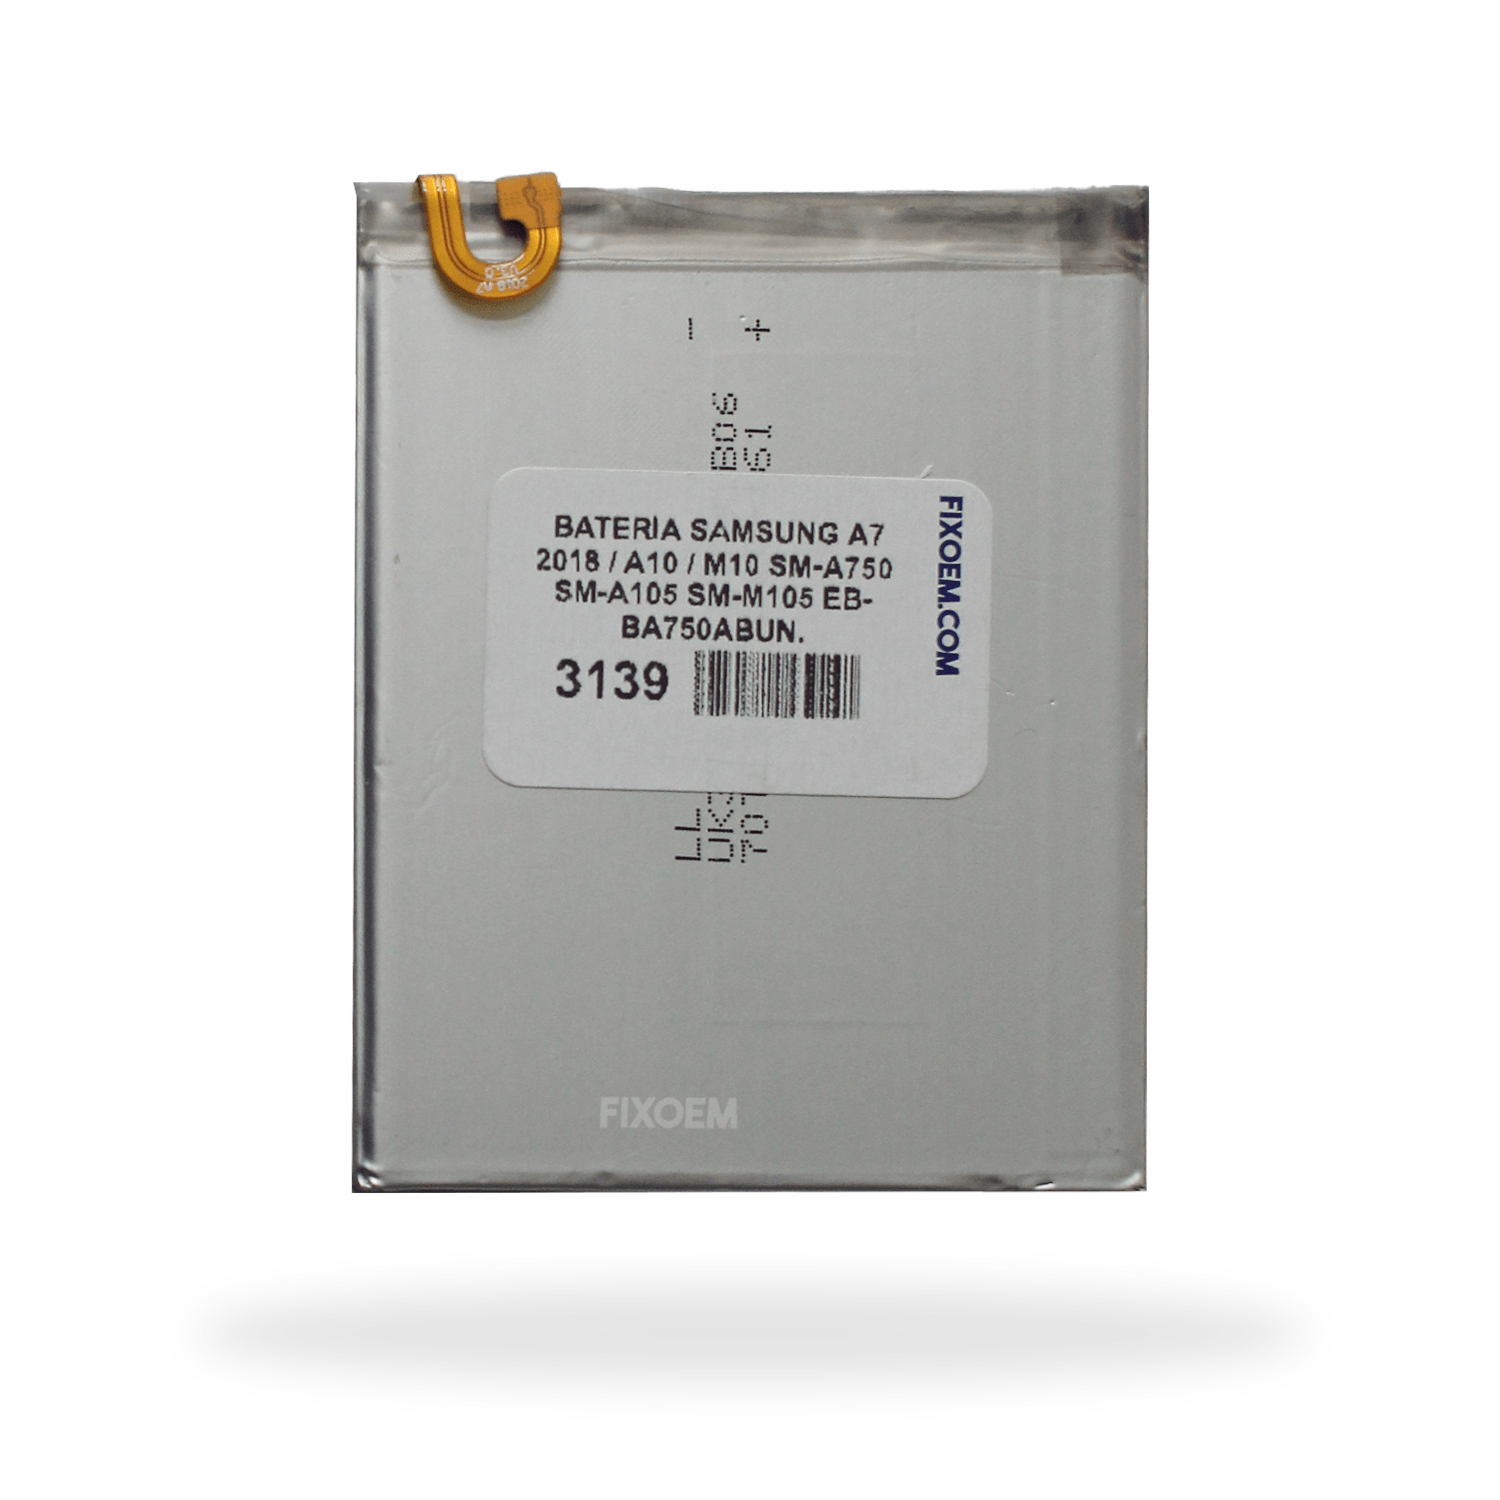 Bateria Samsung A7 2018 / A10 / M10 Sm-a750 Sm-a105 Sm-m105 Eb-ba750abun. a solo $ 120.00 Refaccion y puestos celulares, refurbish y microelectronica.- FixOEM